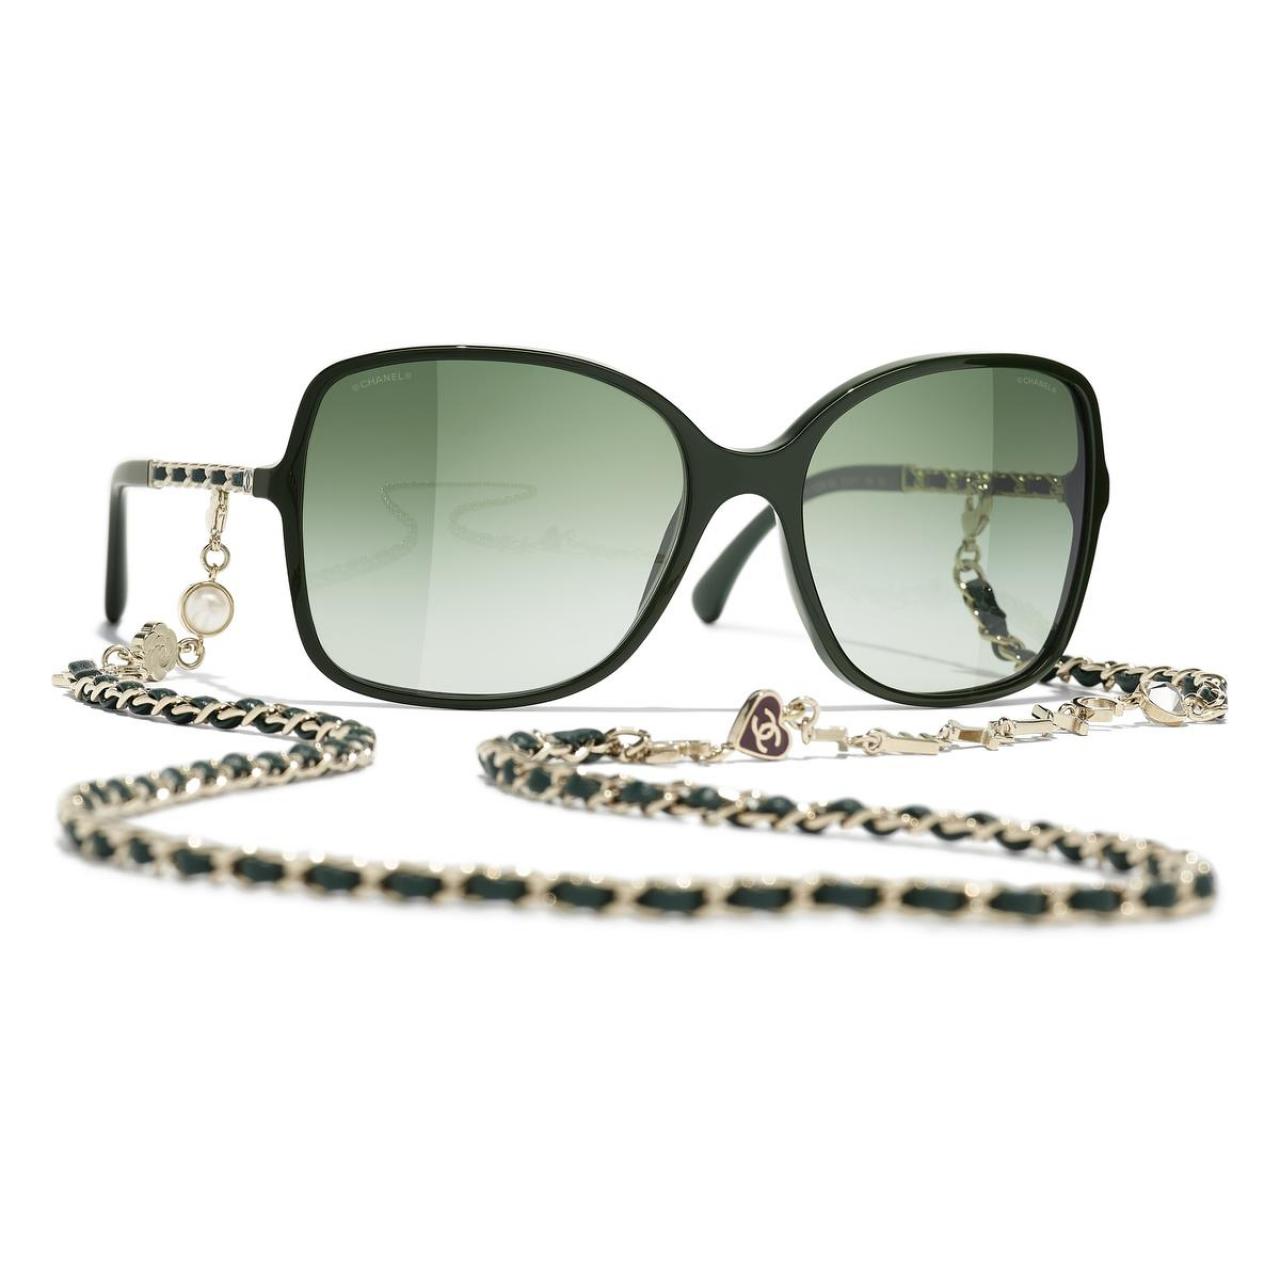 Aan de kettingZo raak je je zonnebril nooit meer kwijt: model van Chanel met een afneembare ketting in leder en metaal, versierd met hartjes, een camelia en parels (1.150 euro).